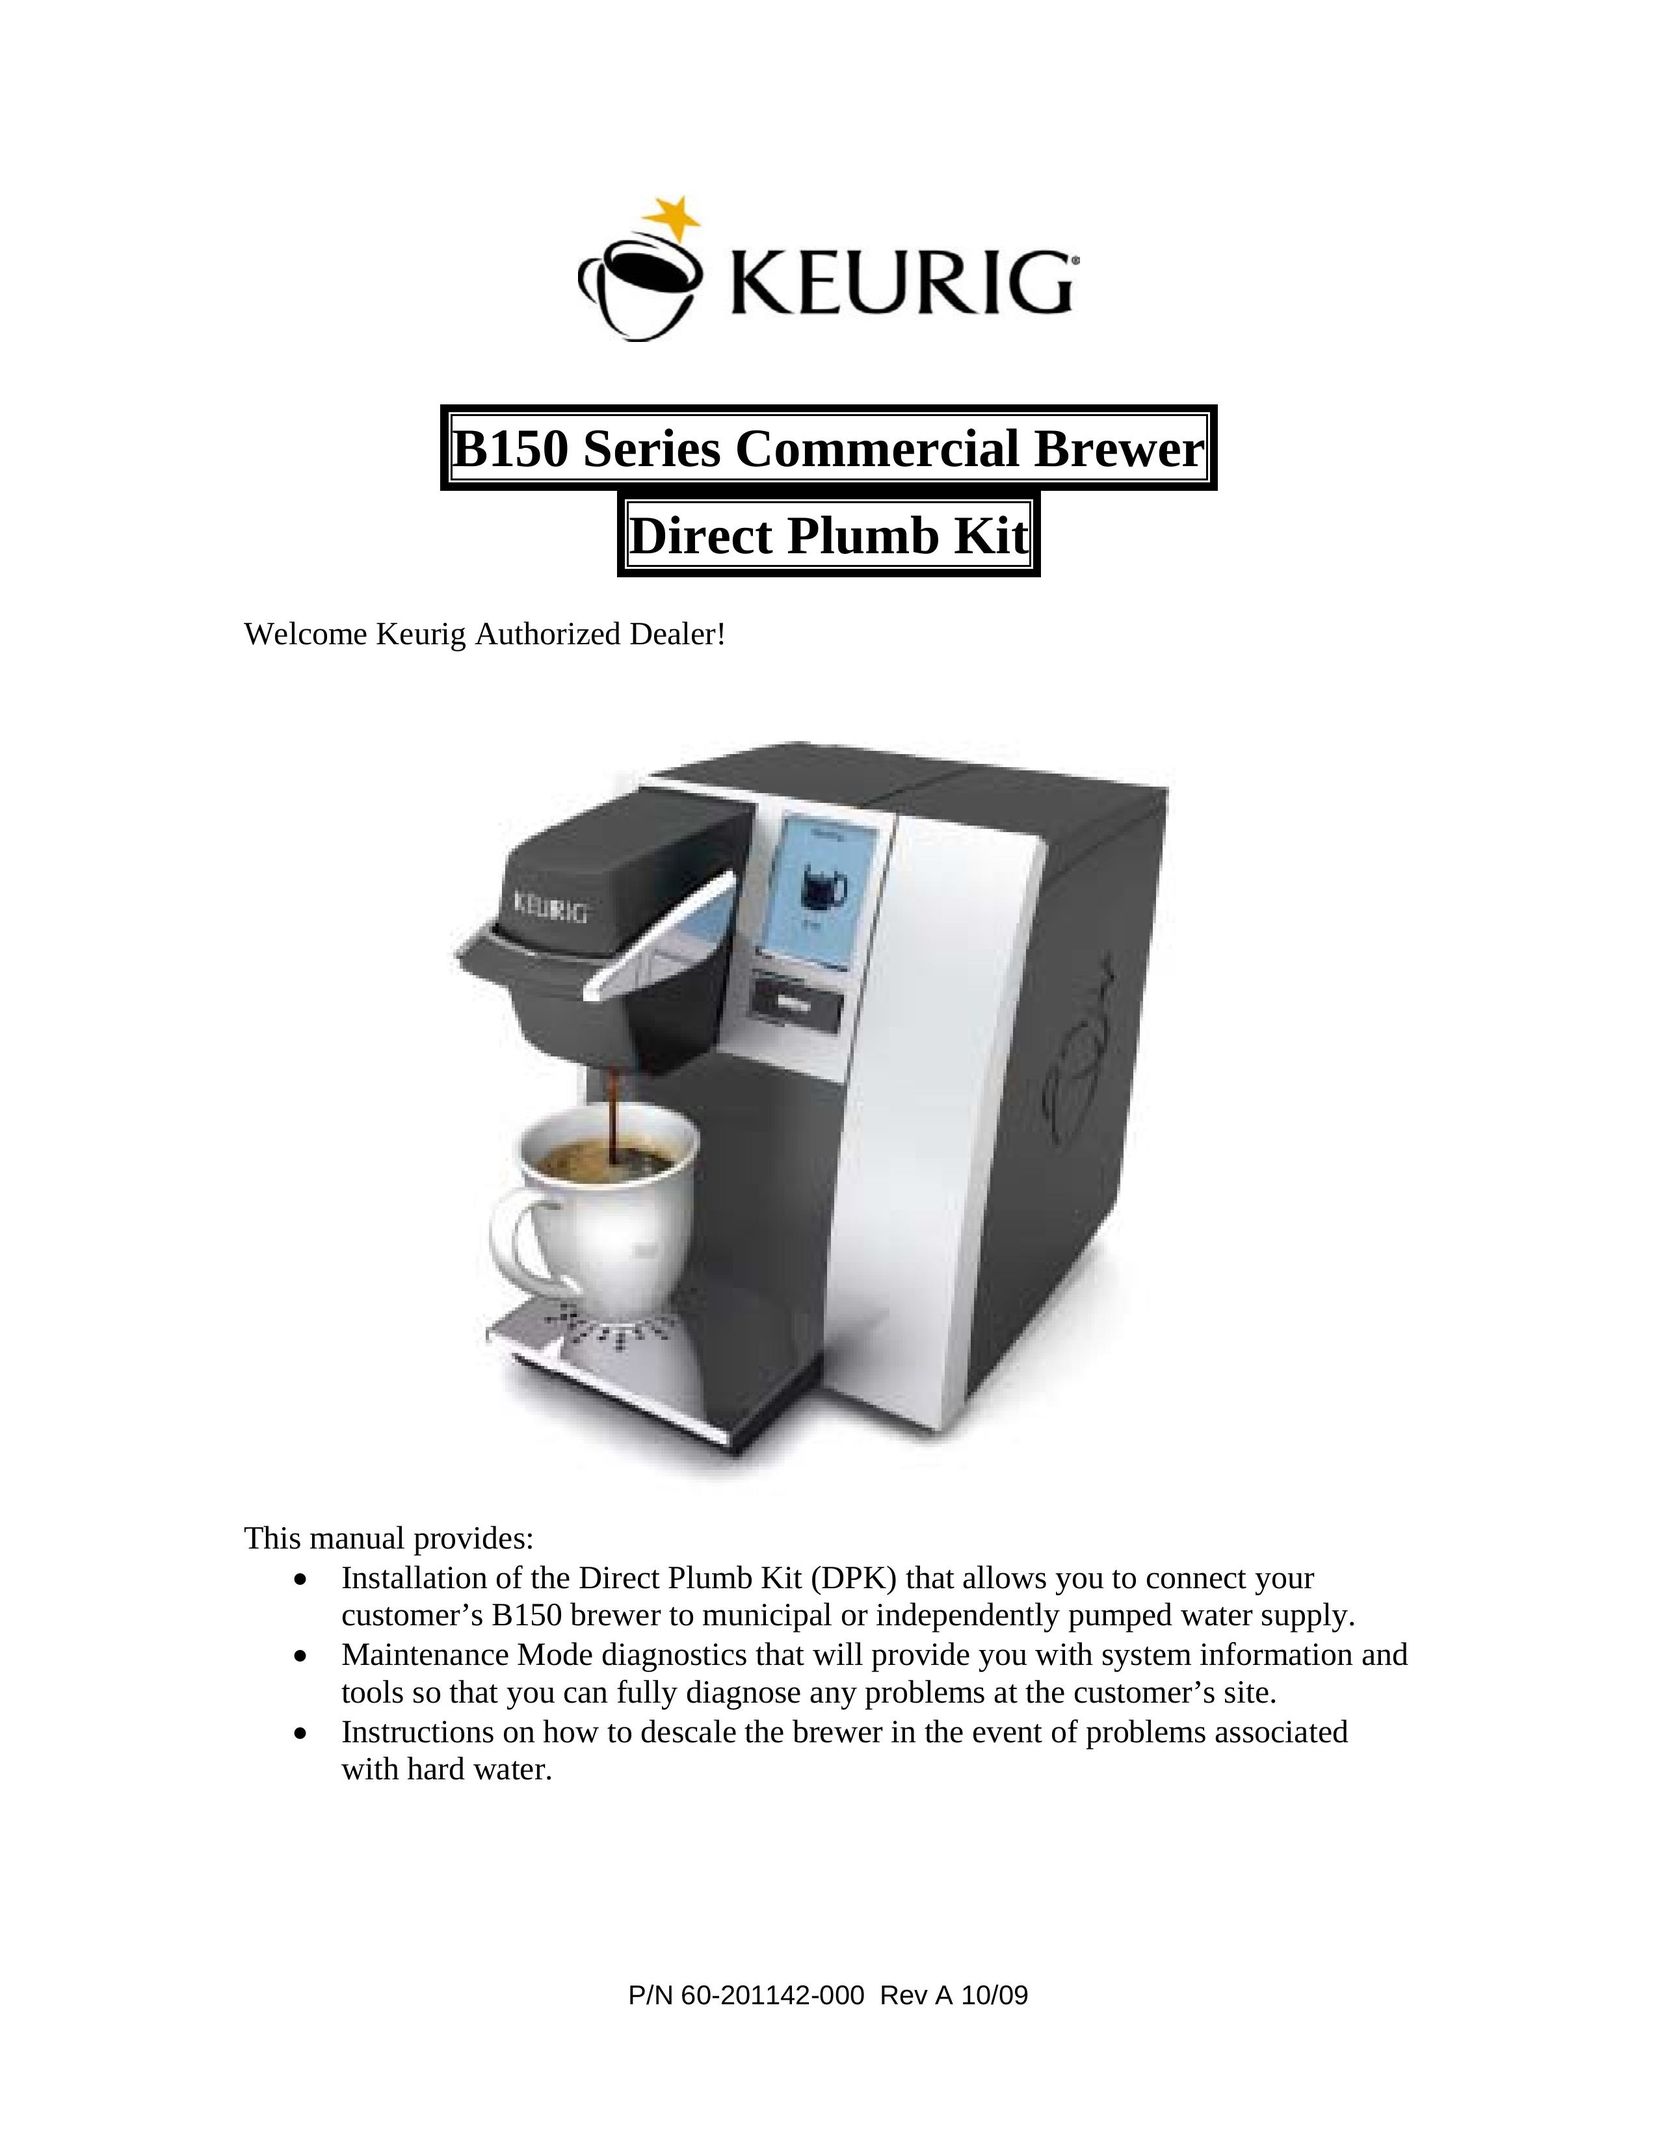 Keurig B150 Coffeemaker User Manual